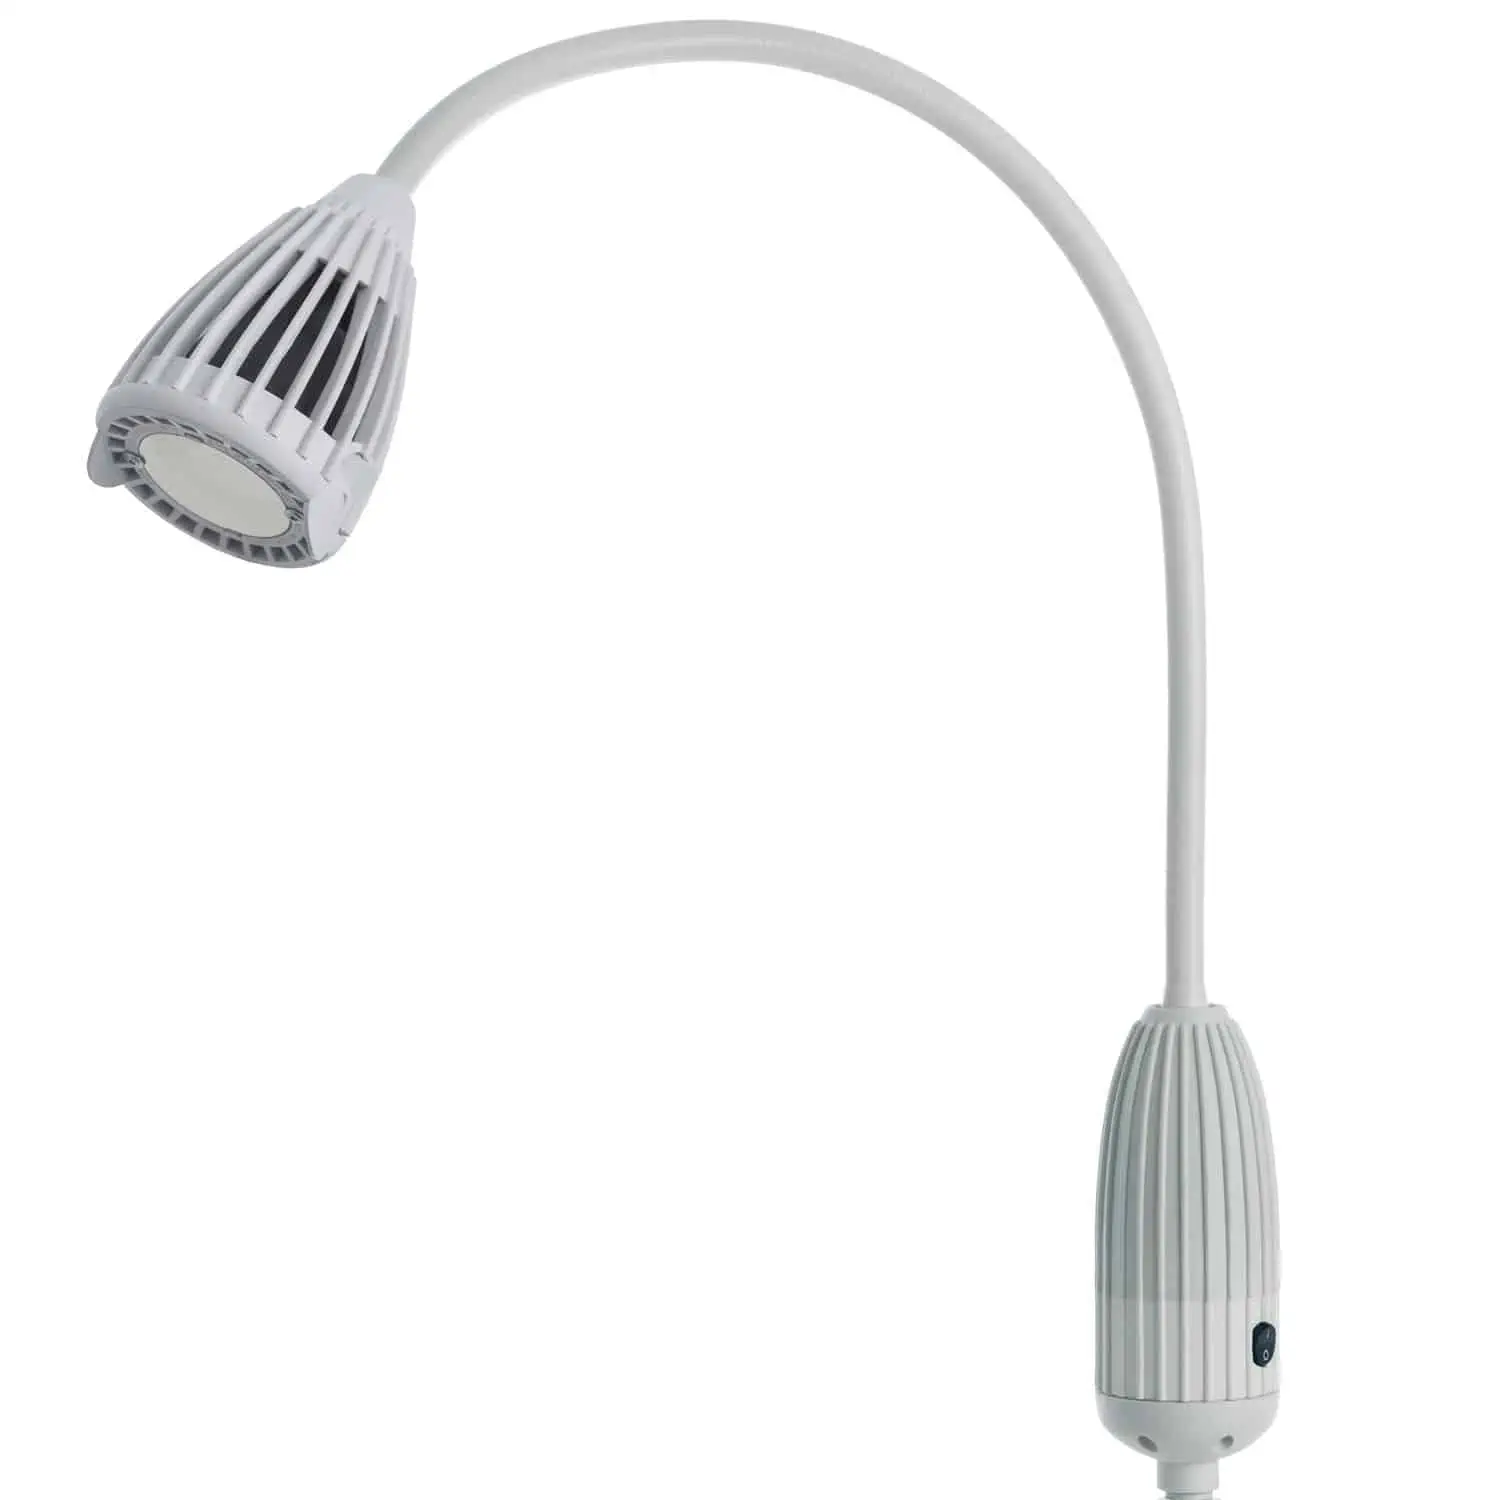 Lampa de examinare cu brat flexibil LUXIFLEX LED PLUS, cu posibilitatea reglarii intensitatii luminii [1]